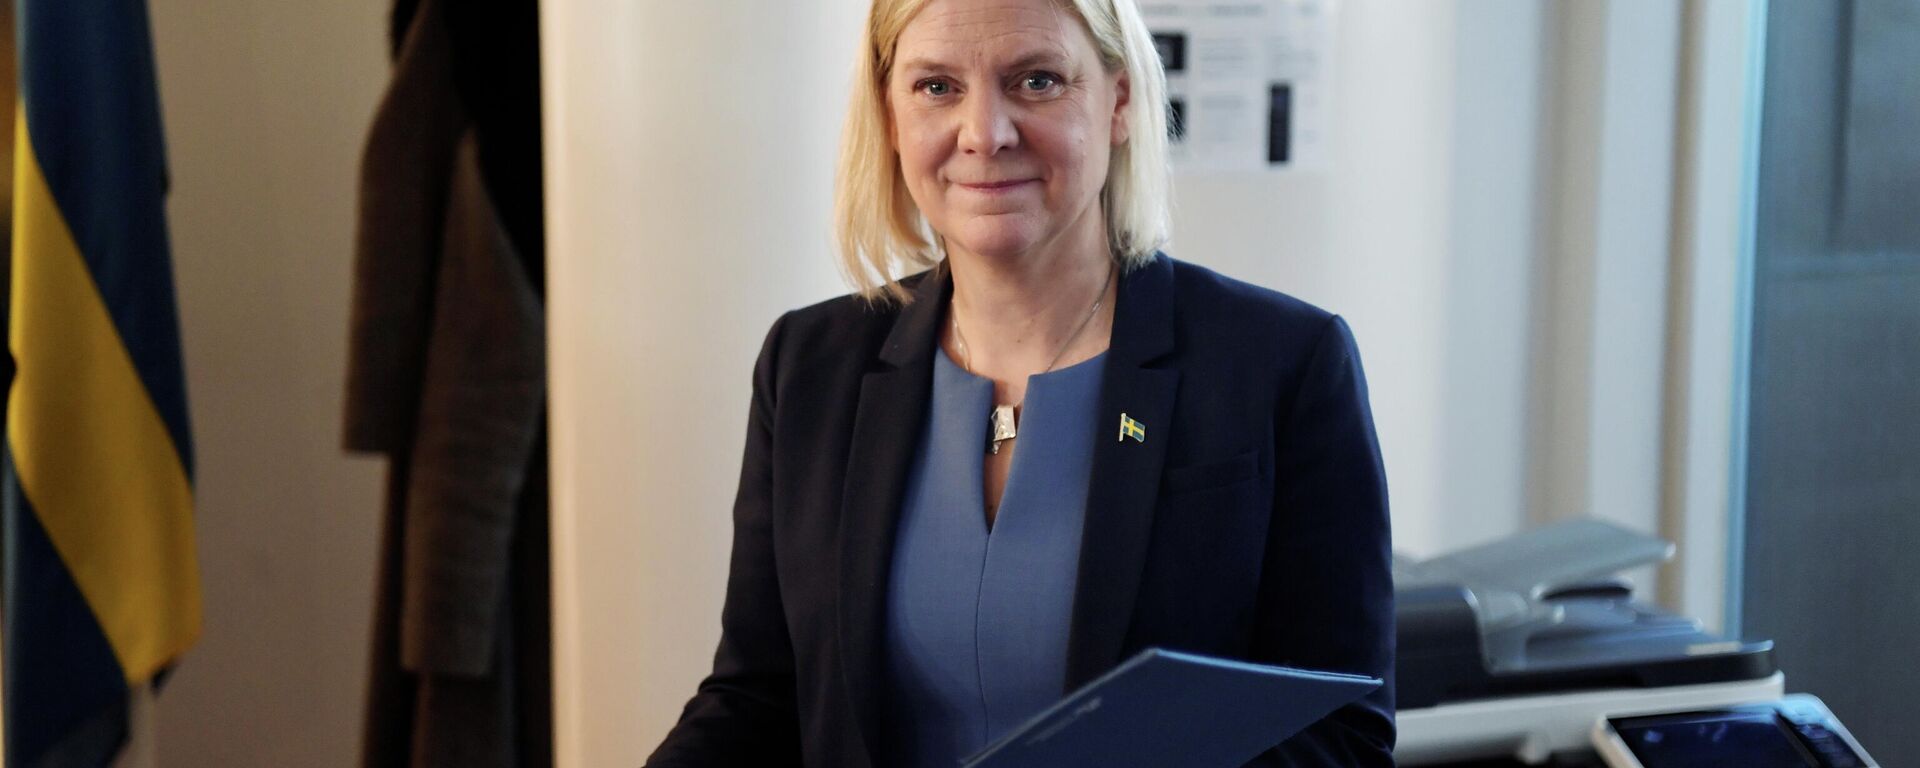 Magdalena Andersson, primer ministra de Suecia - Sputnik Mundo, 1920, 24.11.2021